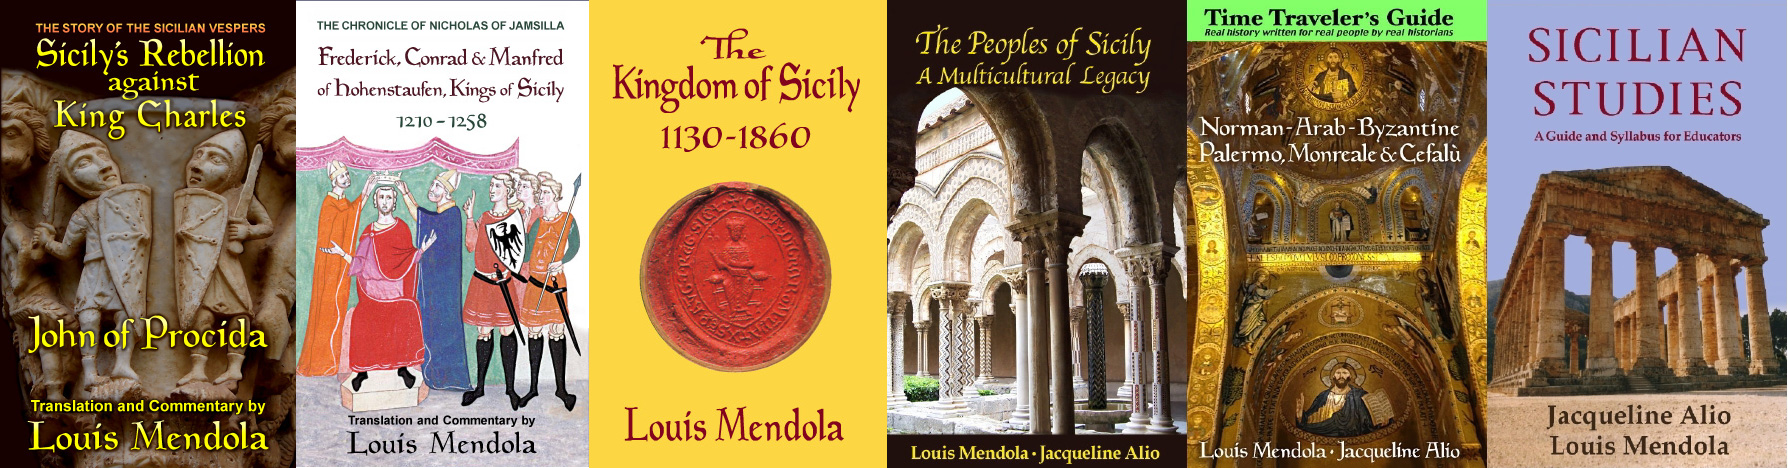 kingdom of two sicilies louis mendola